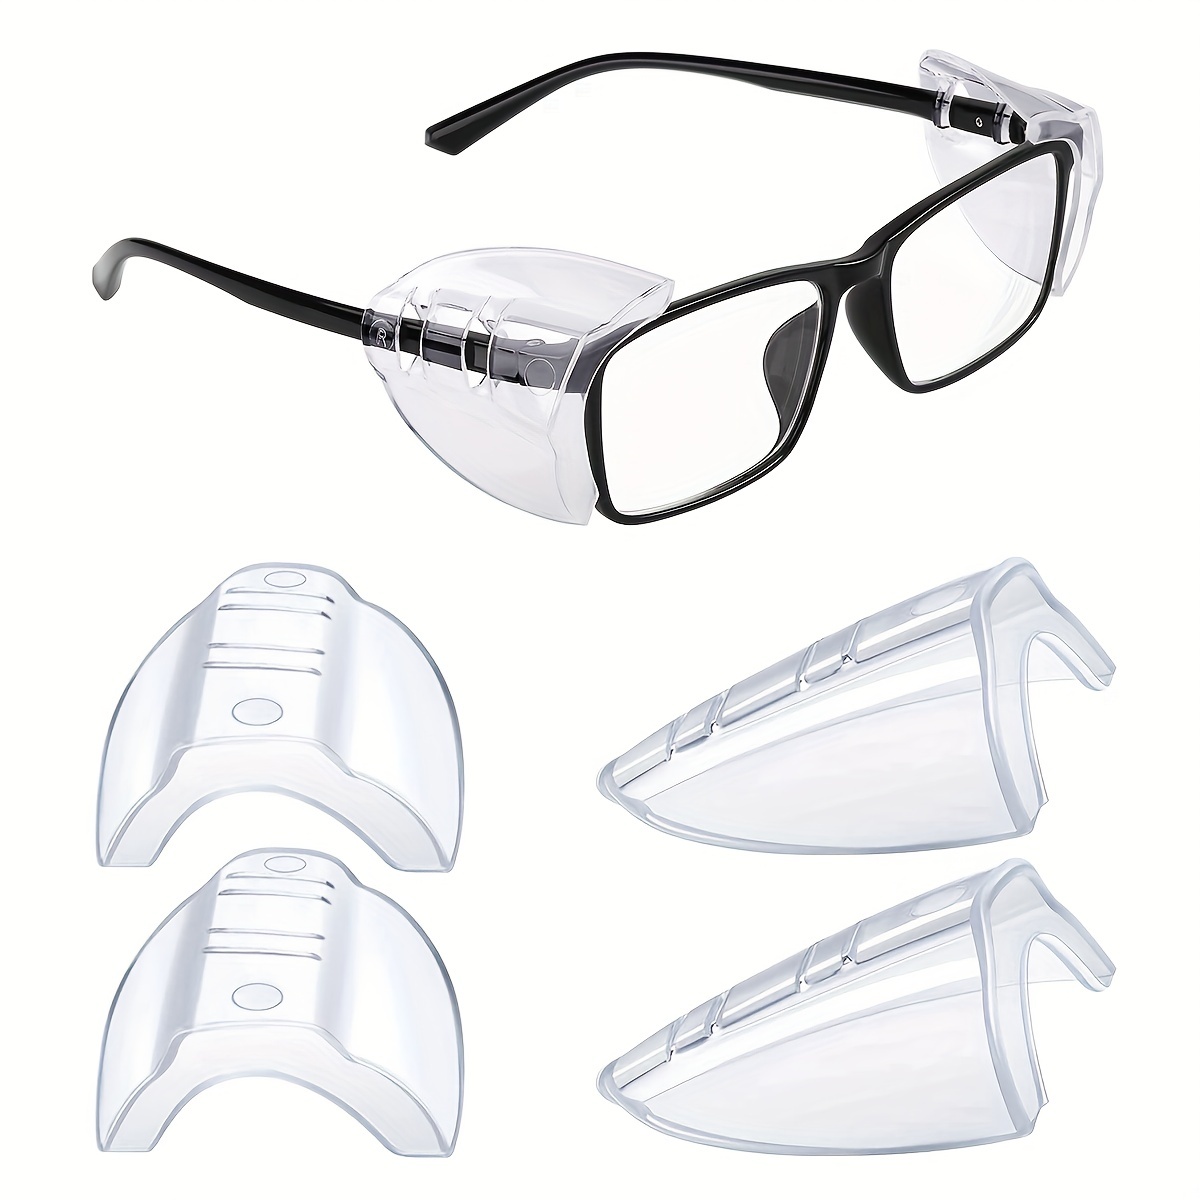 5 beneficios de usar gafas de seguridad con lentes antivaho